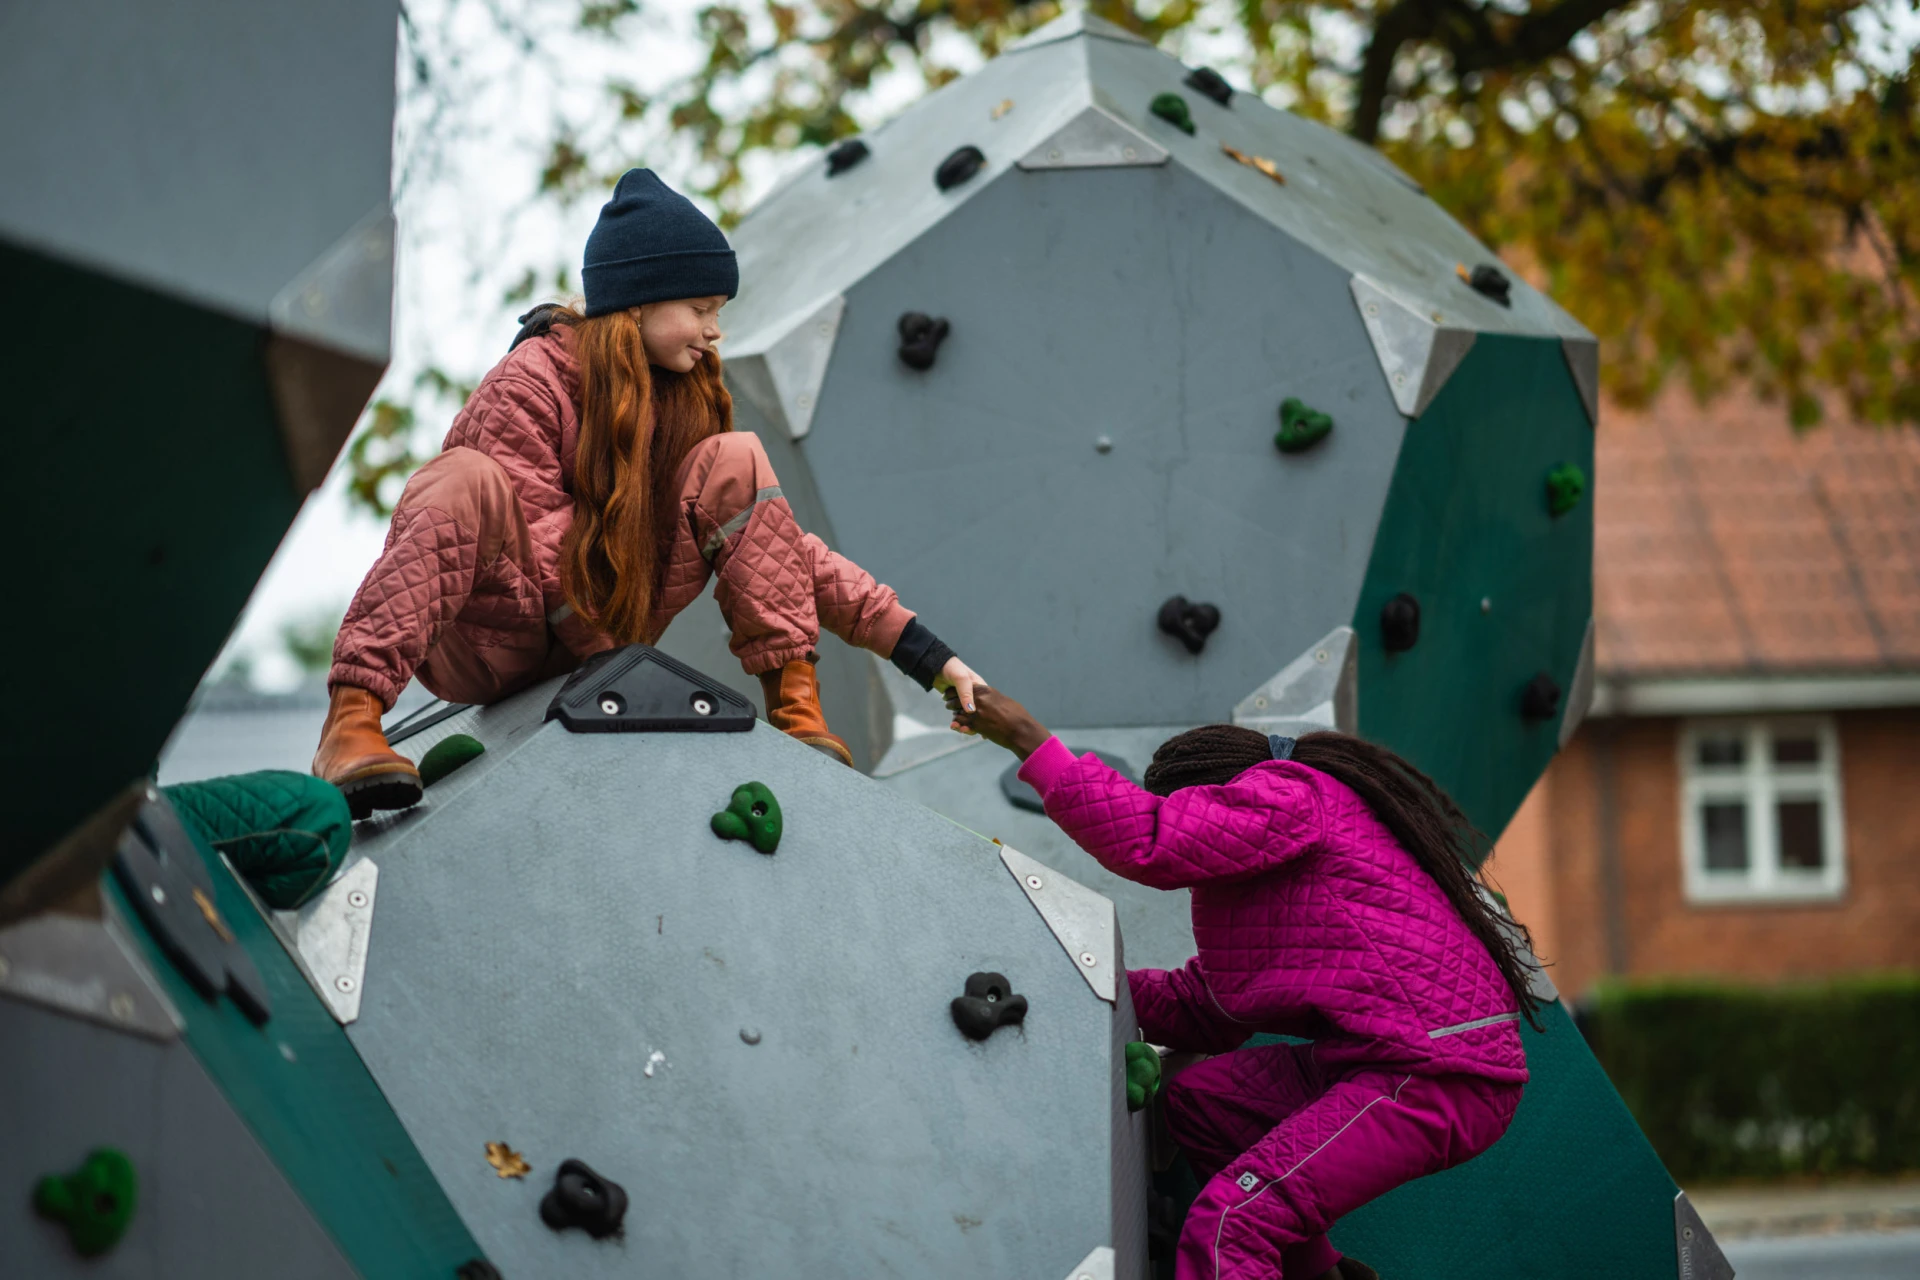 Una niña ayuda a otra a subir a una estructura de escalada en un parque infantil